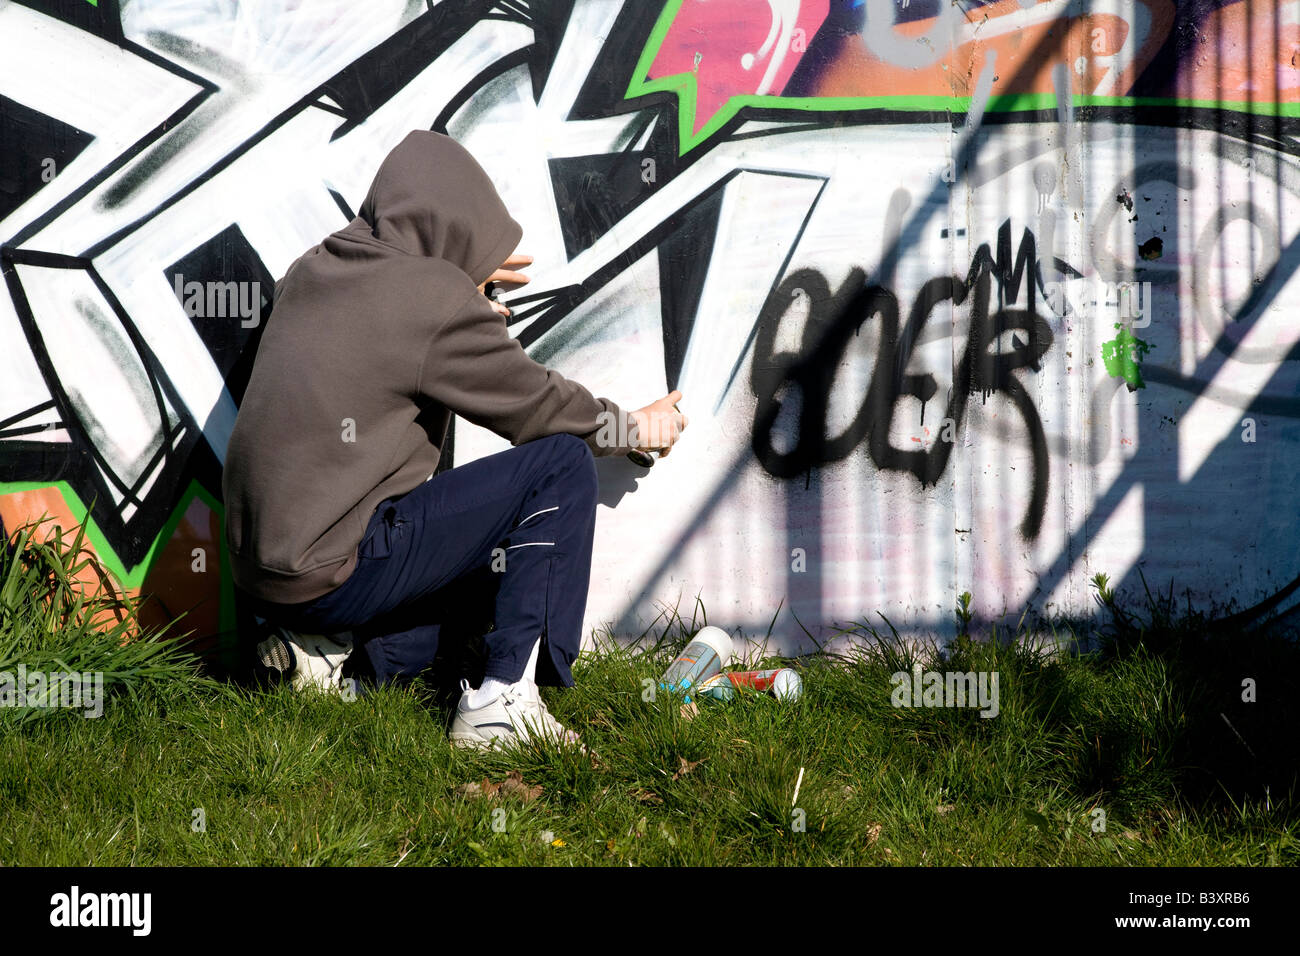 youth spraying graffiti on wall Stock Photo